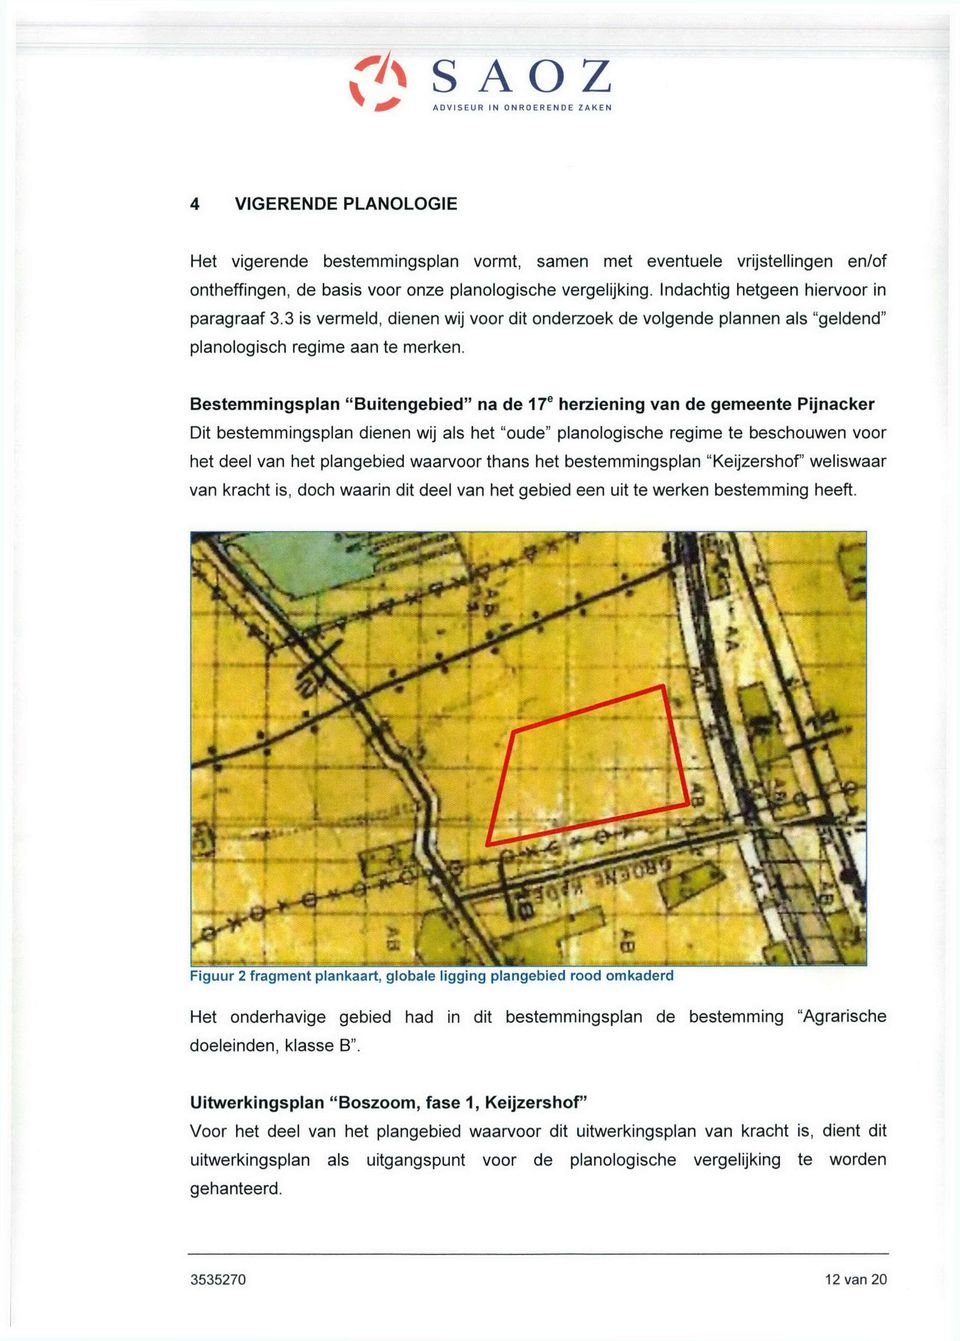 Bestemmingsplan "Buitengebied" na de 17" herziening van de gemeente Pijnacker Dit bestemmingsplan dienen wij als het "oude" planologische regime te beschouwen voor het deel van het plangebied